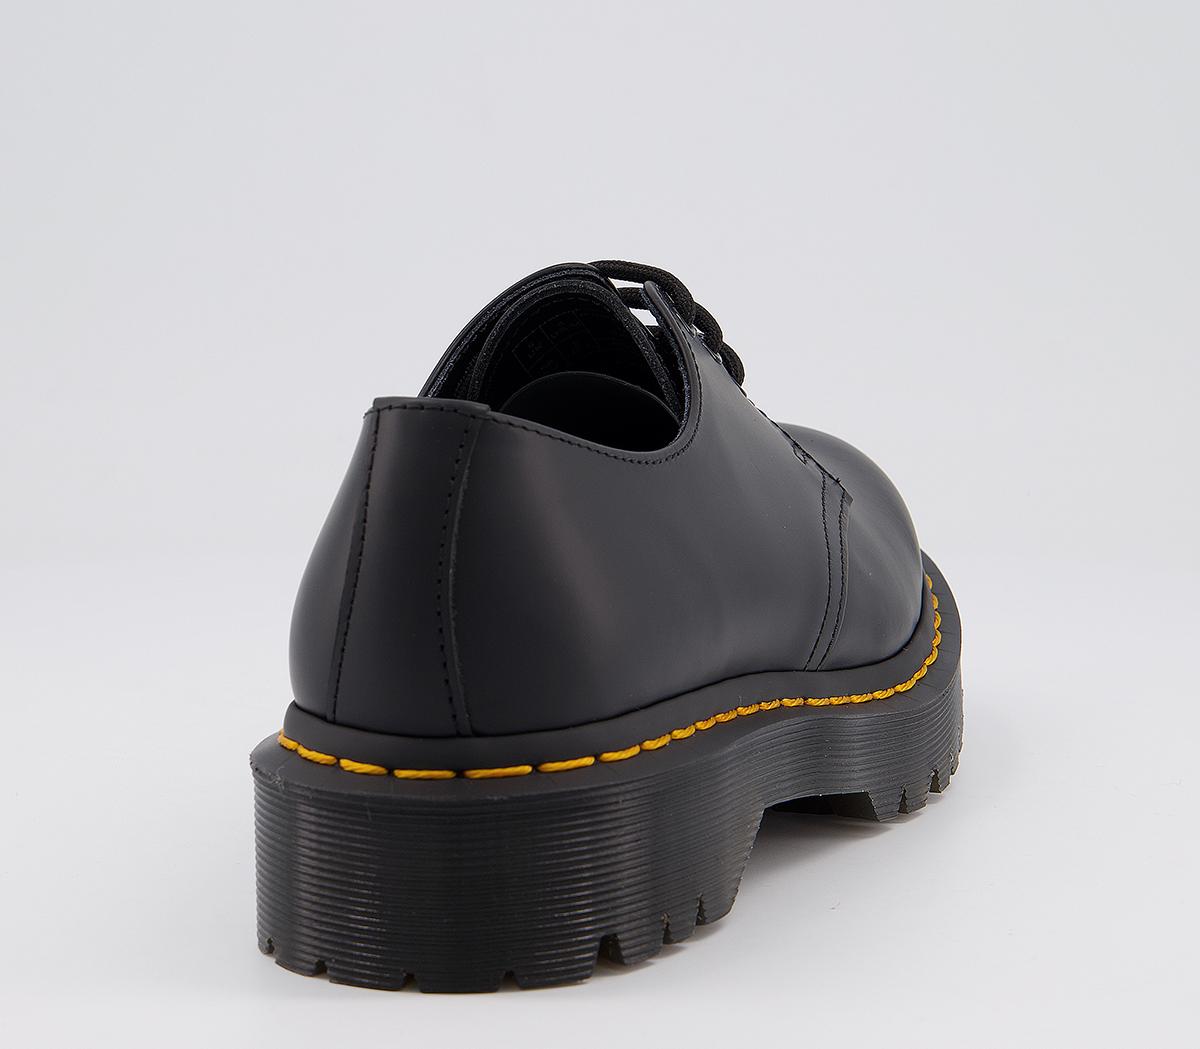 Dr. Martens Bex Shoes Black - Flat Shoes for Women